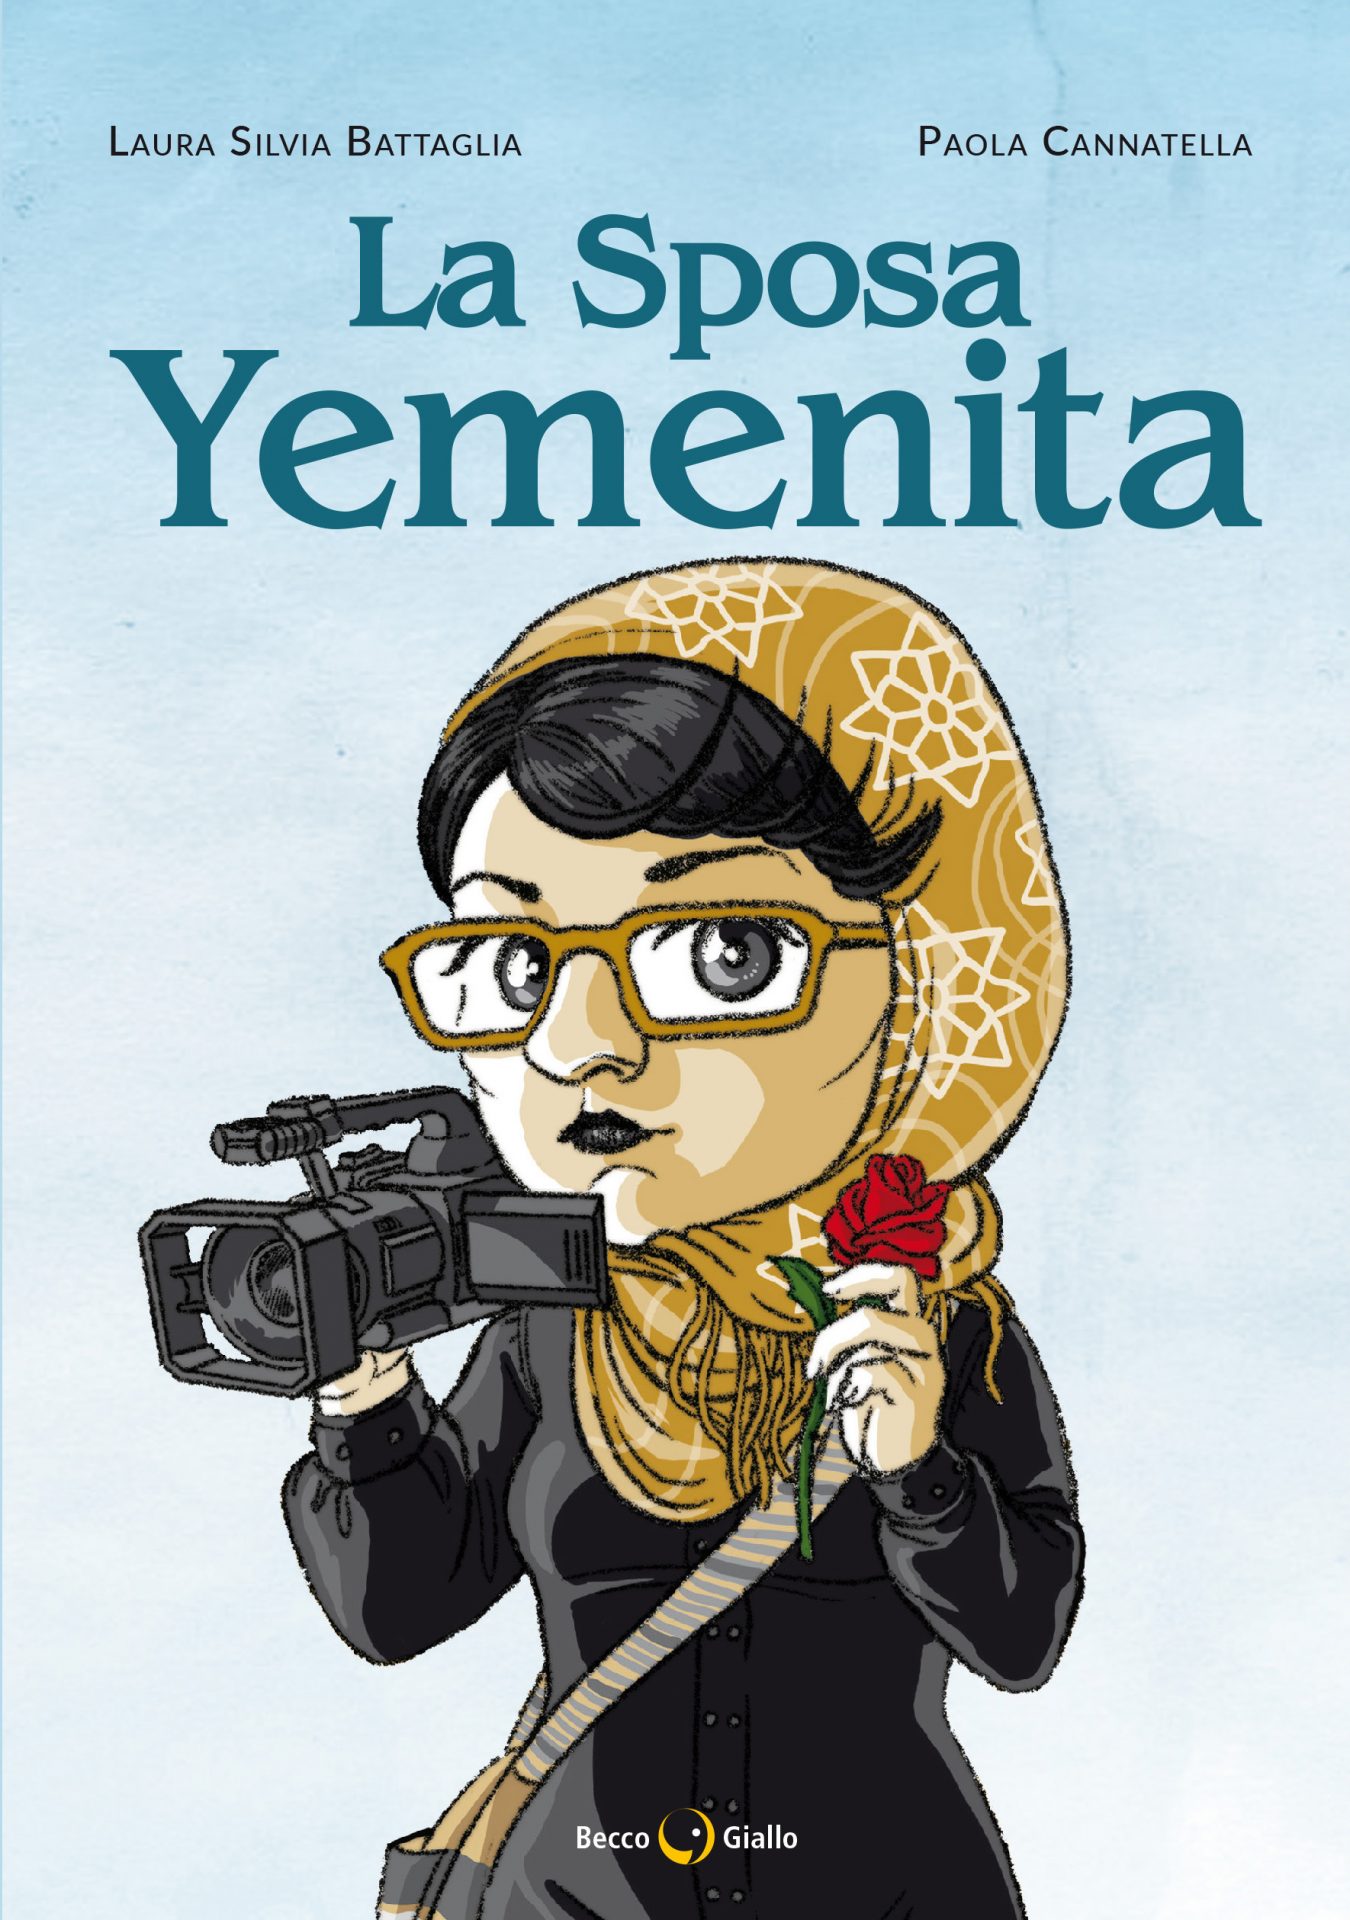 Agli Incontri d’autore “La sposa yemenita”